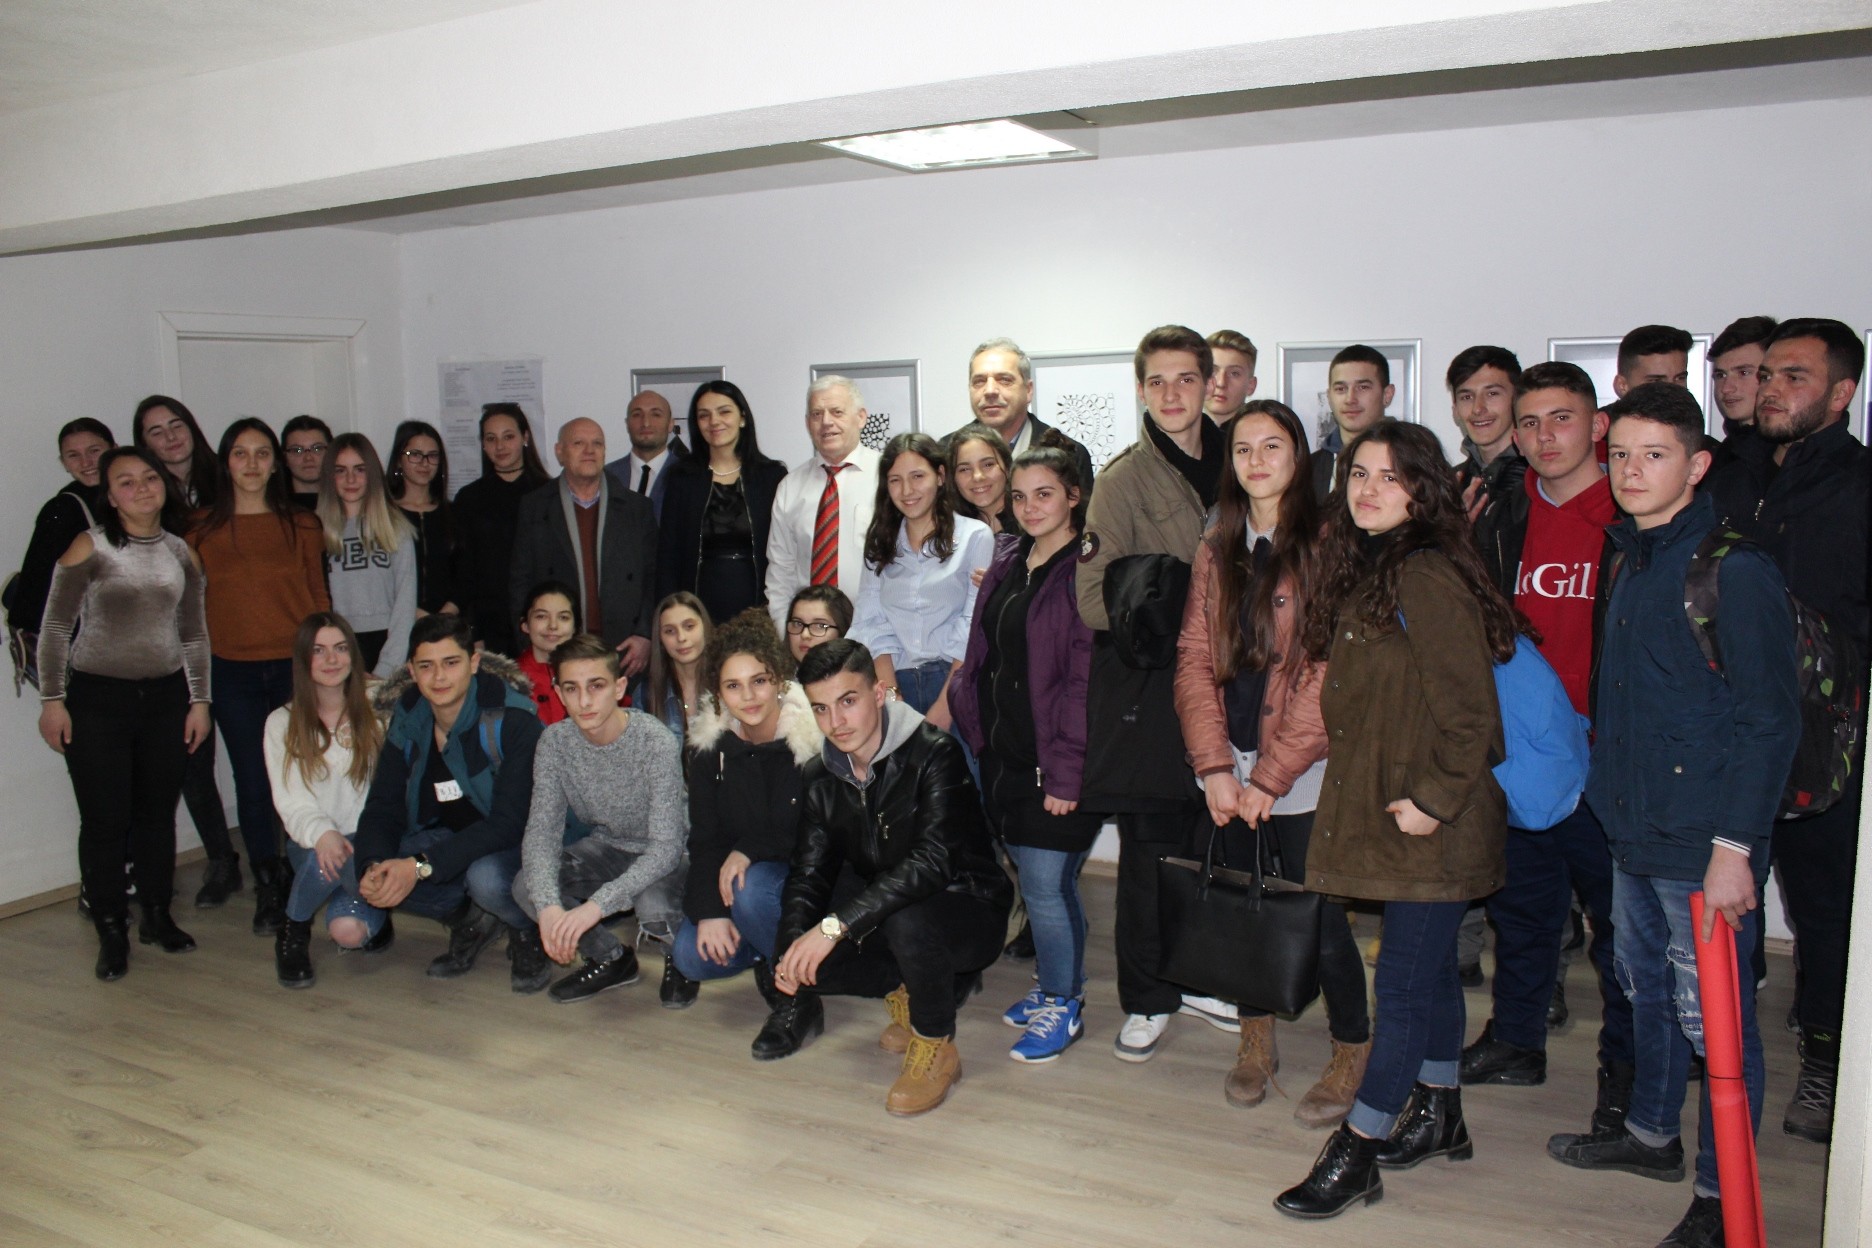 Shkolla e Artit në Gjilan organizon ekspozitë në 10 vjetorin e pavarësisë